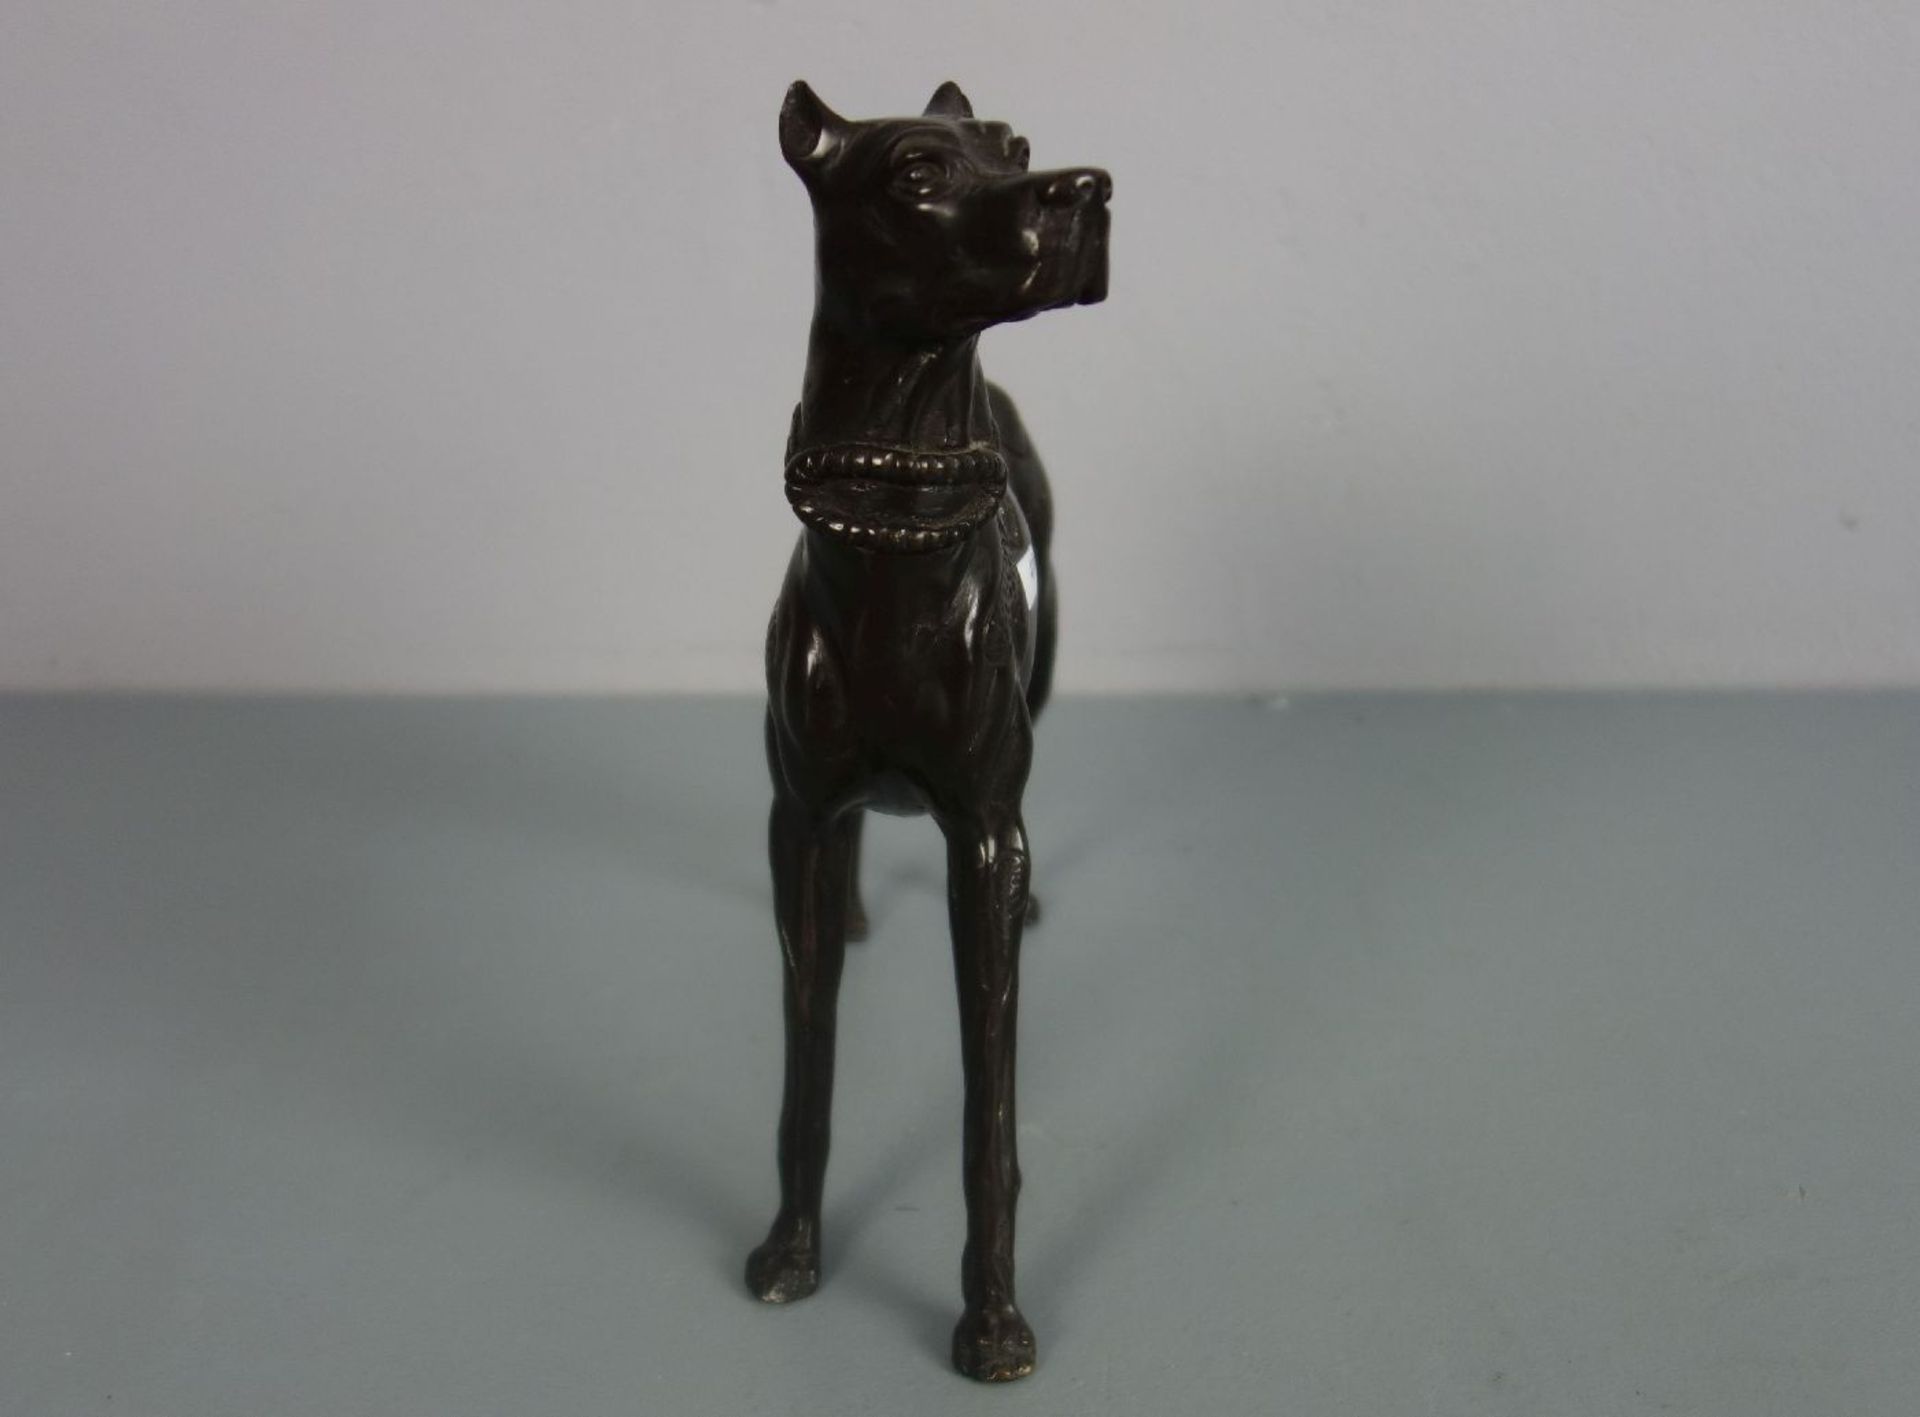 BILDHAUER / ANIMALIER DES 20. JH., Skulptur: "Dogge", Bronze, dunkelbraun patiniert. - Image 2 of 4